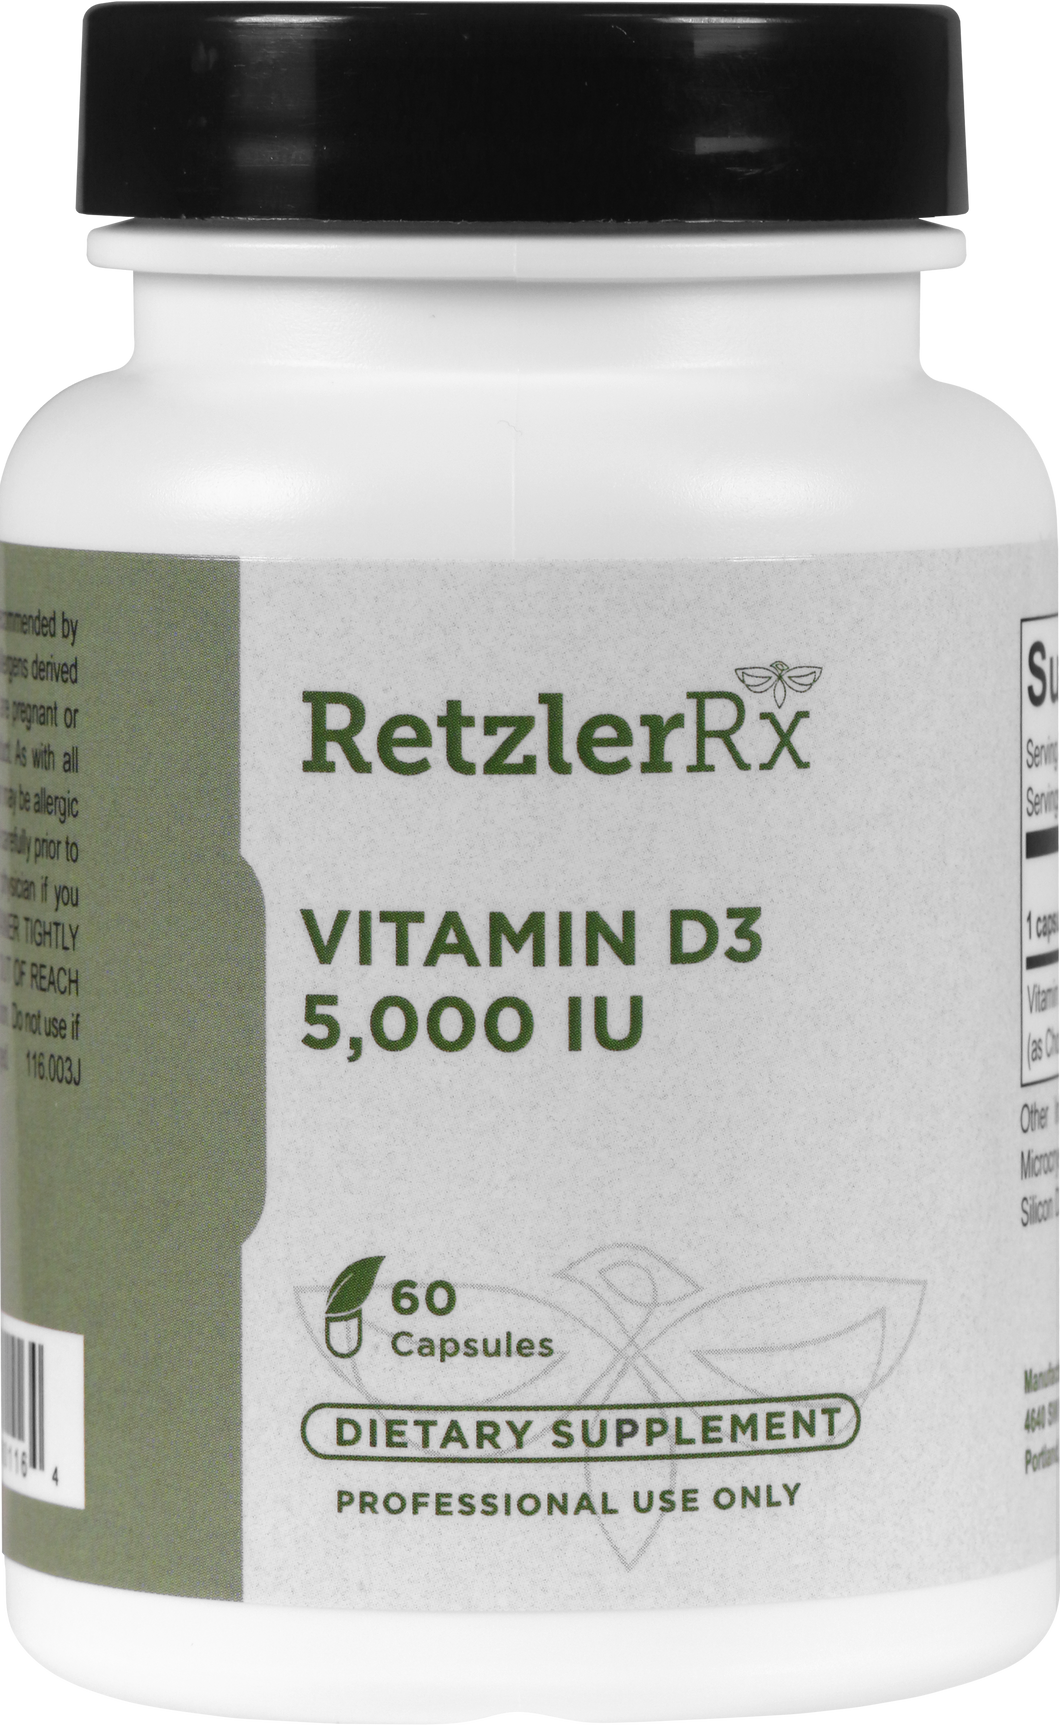 Vitamin D3 5,000 IU 60 capsules by RetzlerRx™